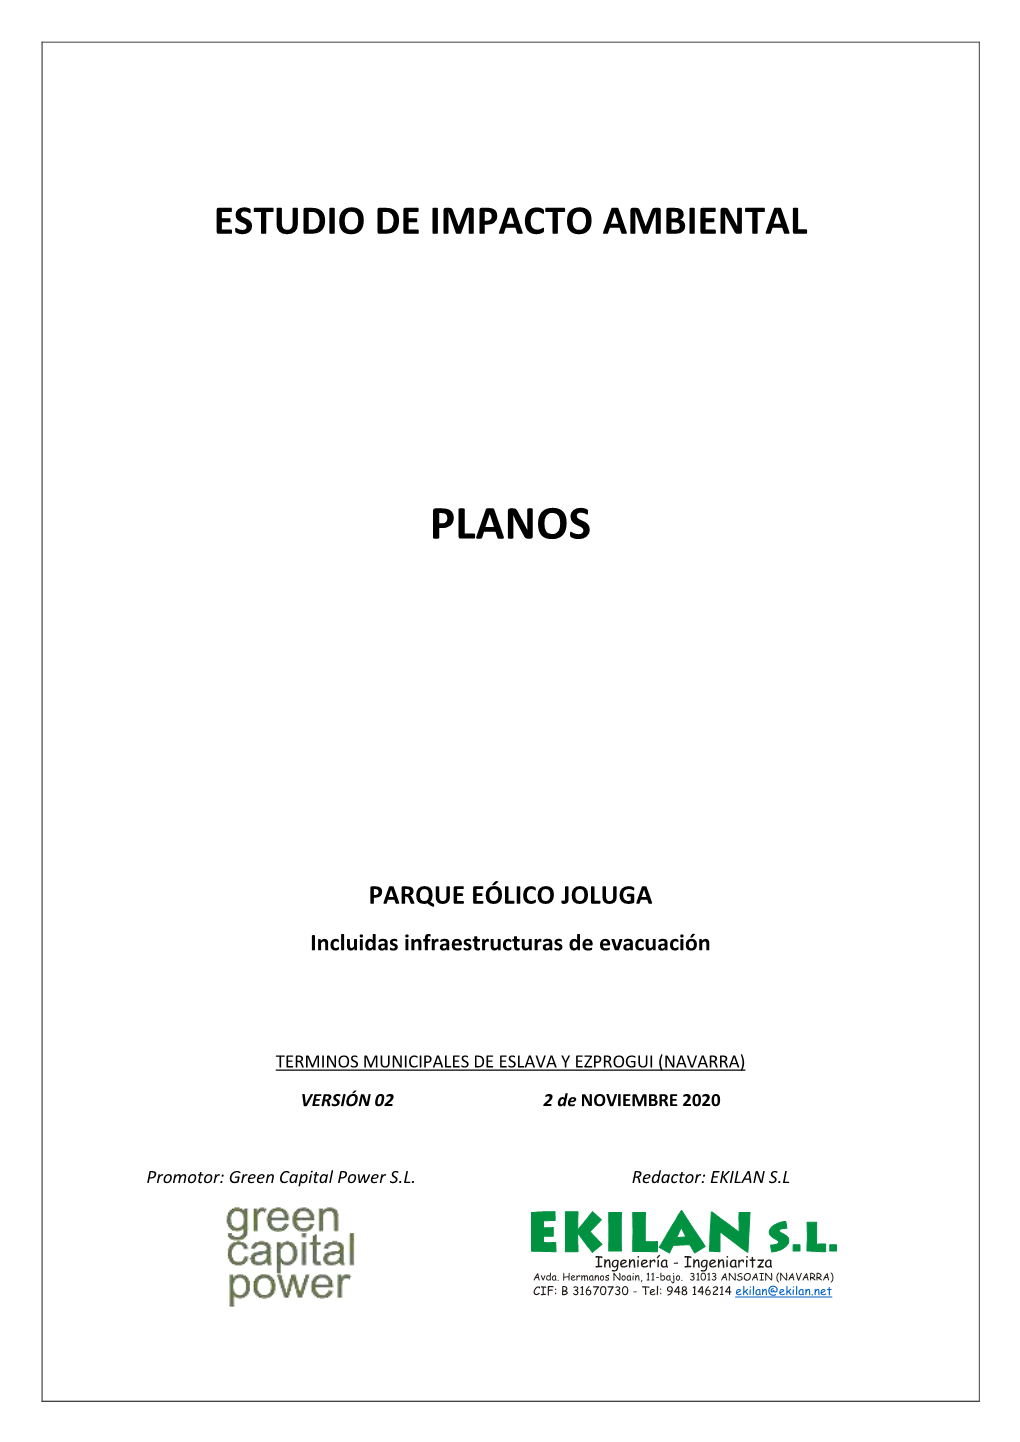 7. Estudio De Impacto Ambiental. Planos